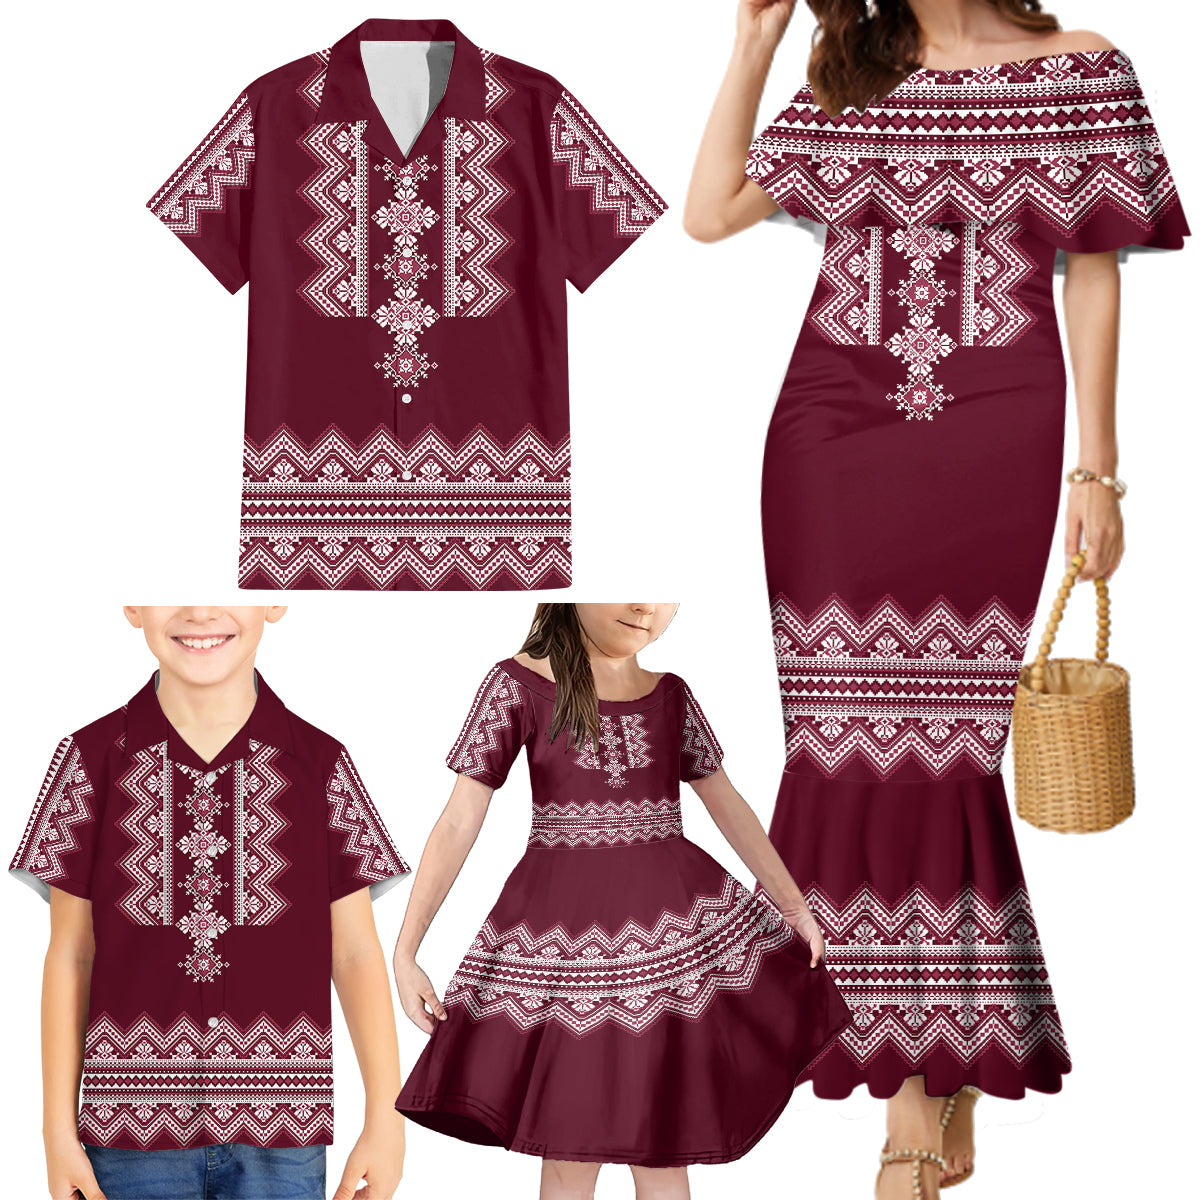 ukraine-folk-pattern-family-matching-mermaid-dress-and-hawaiian-shirt-ukrainian-wine-red-version